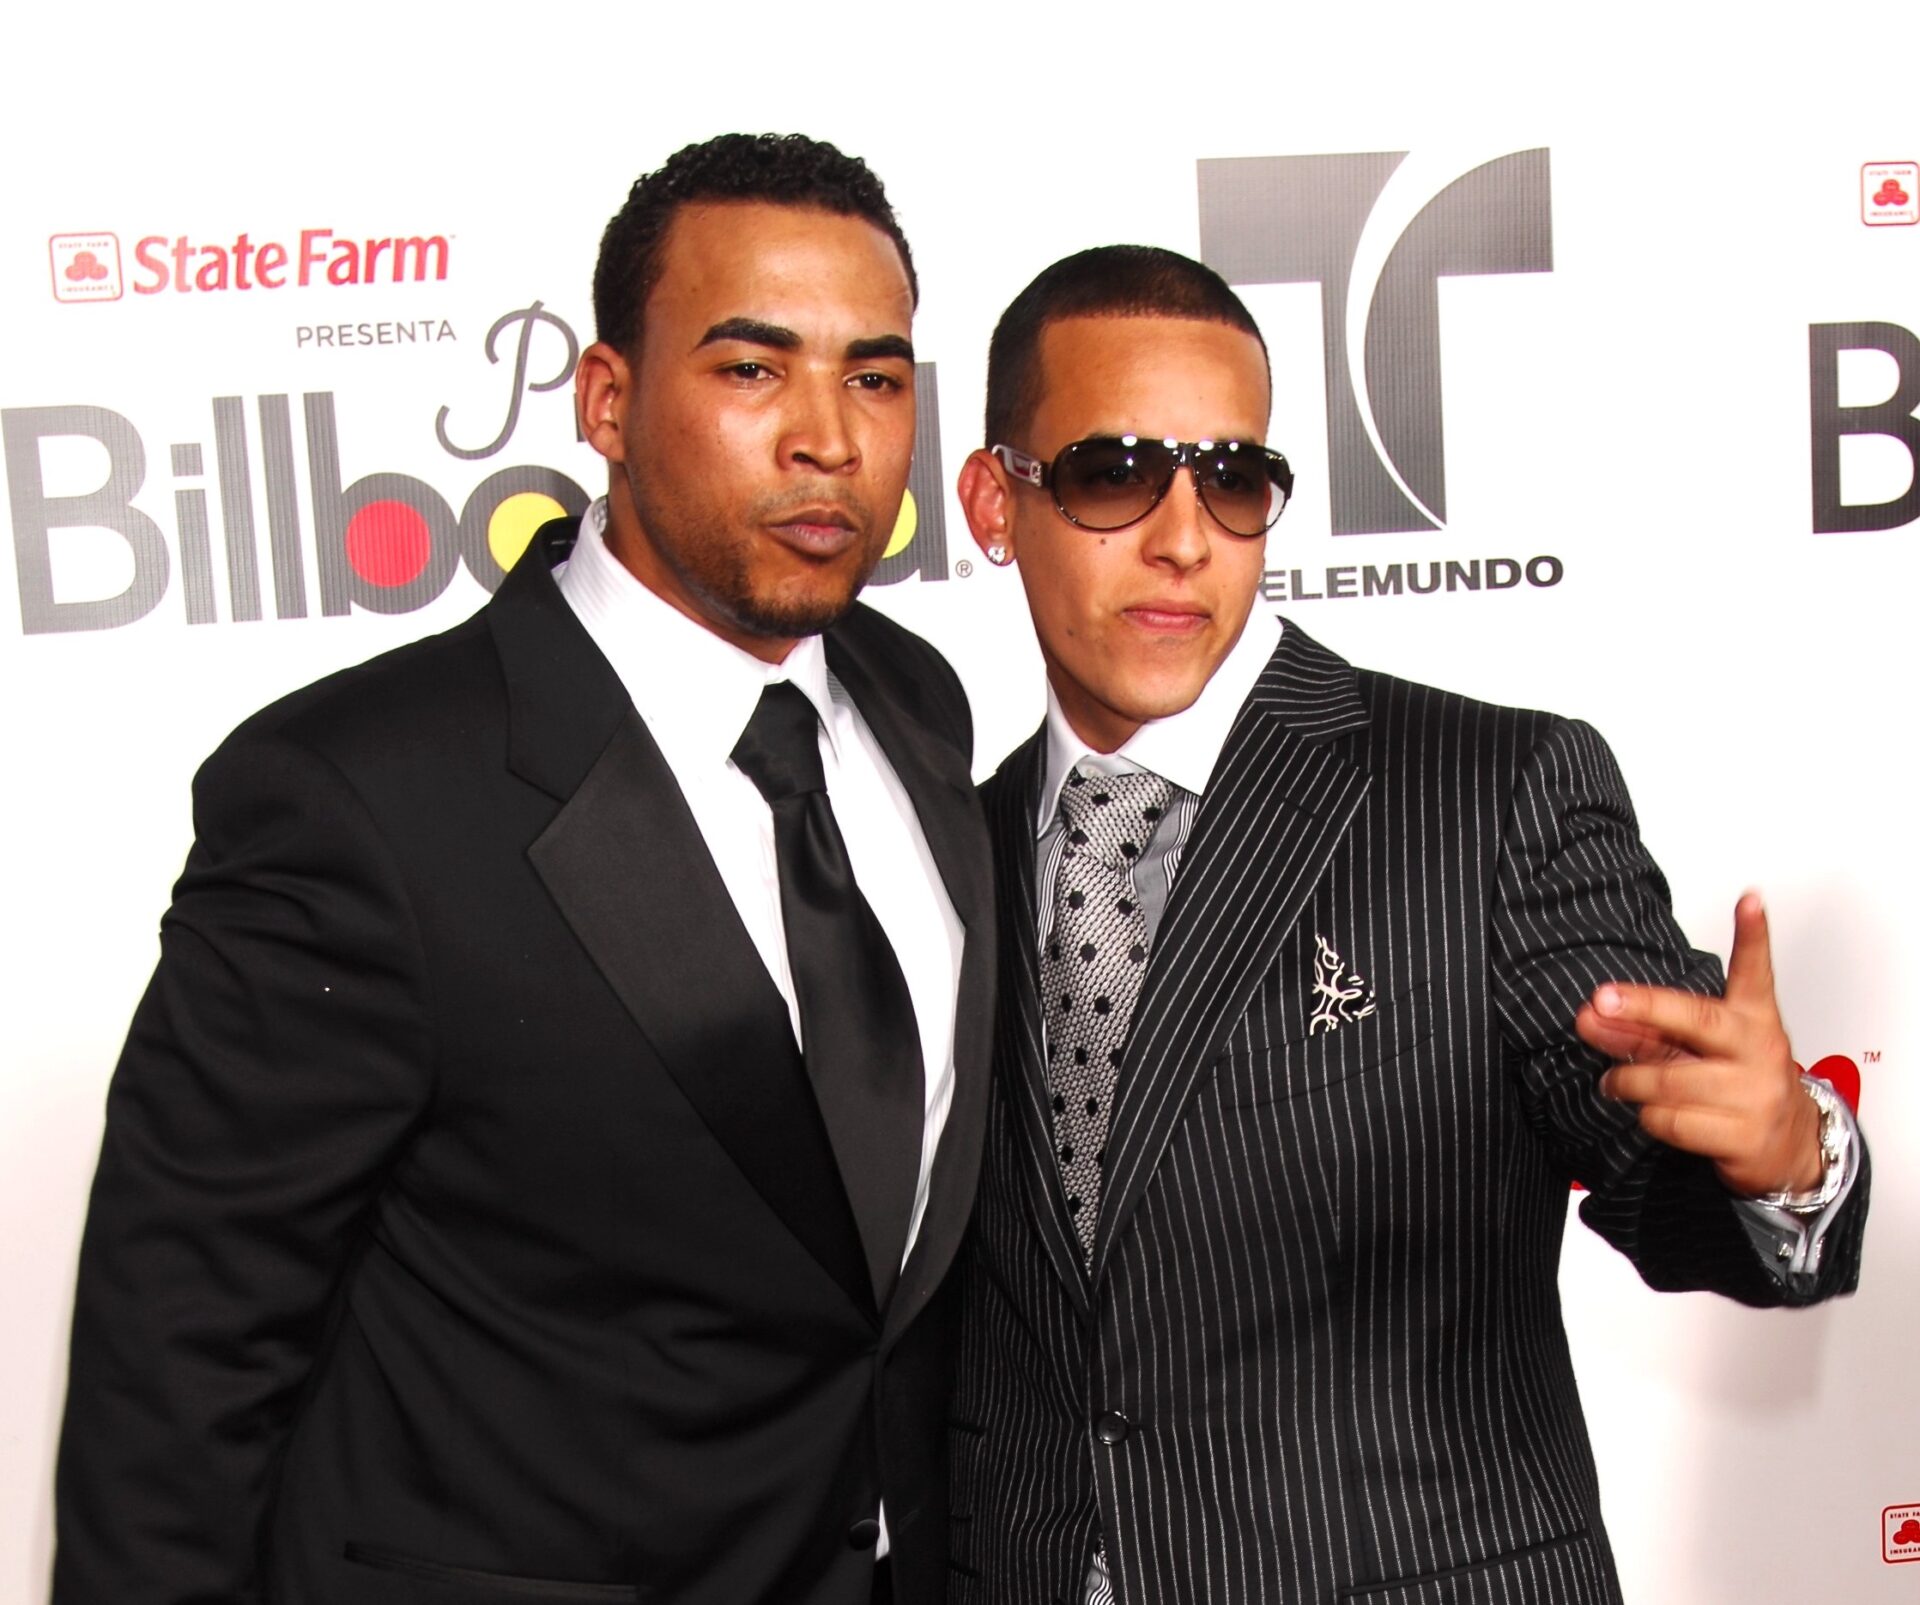 Don Omar recuerda problemas en gira con Daddy Yankee